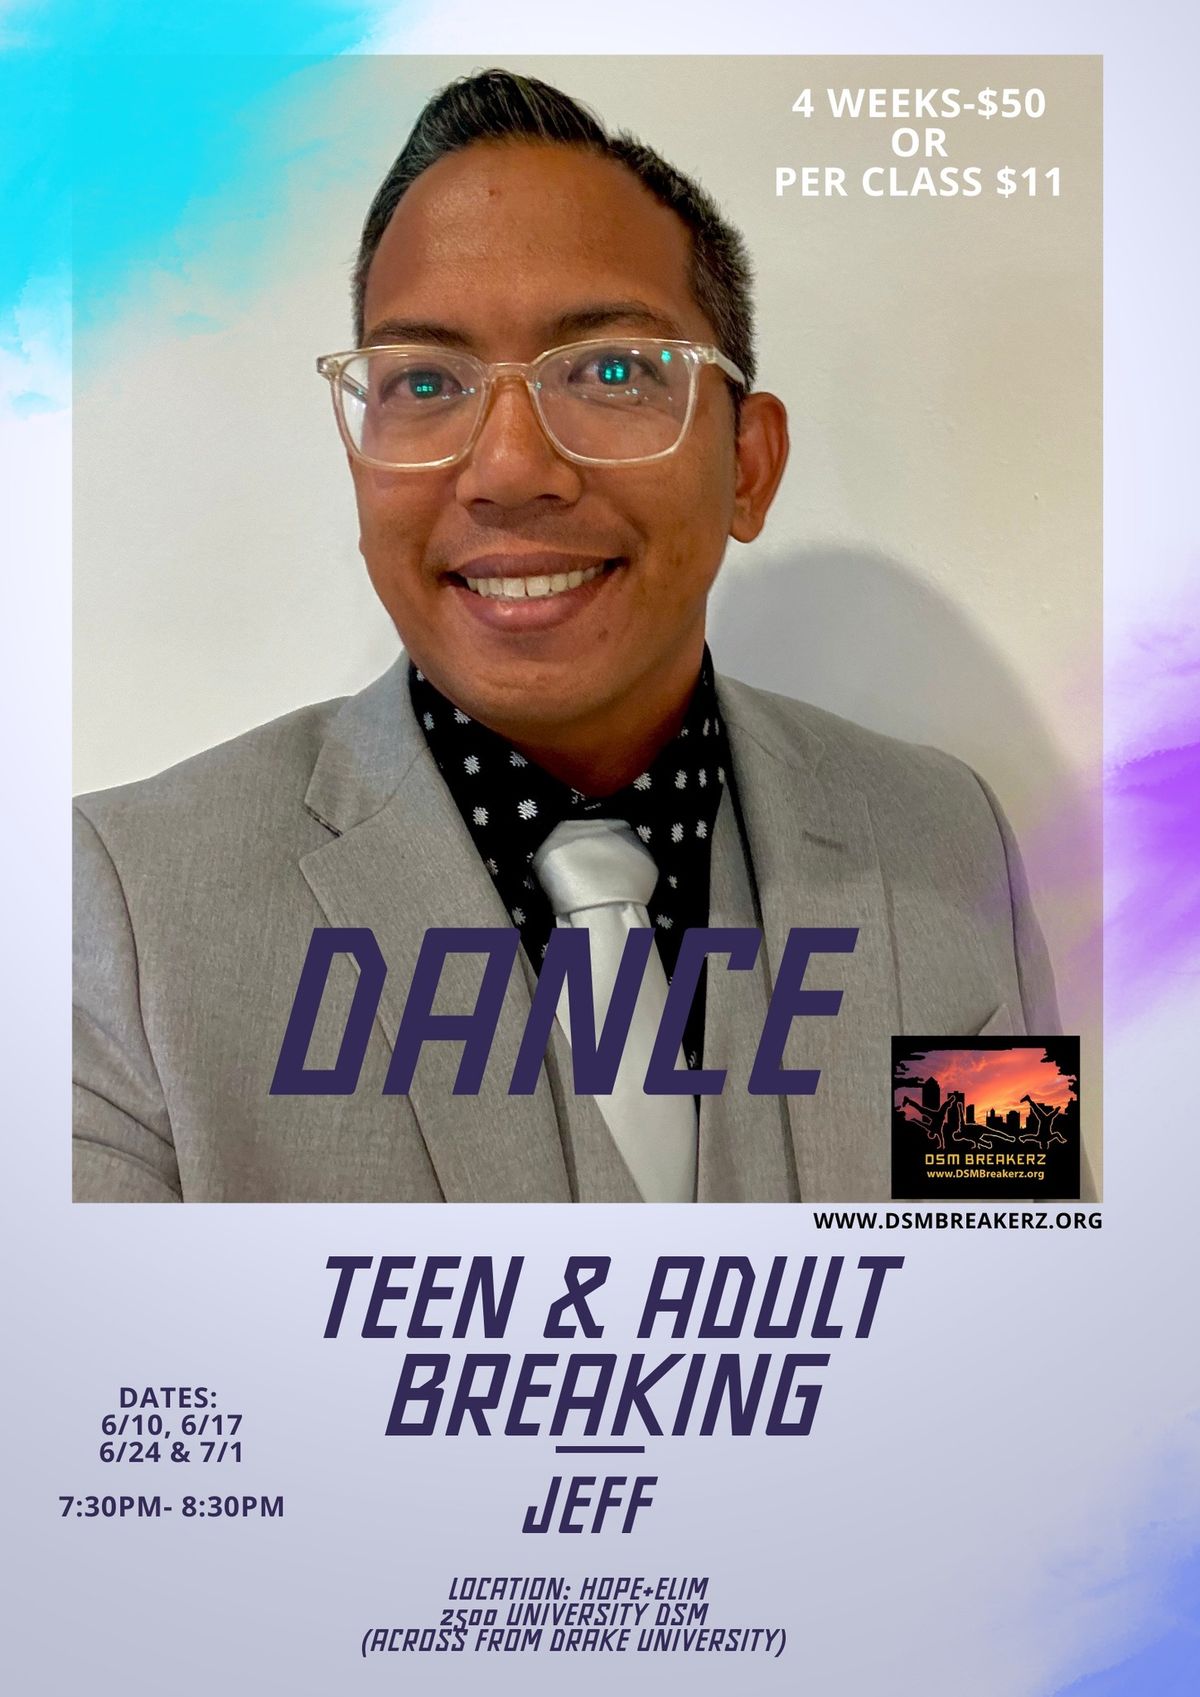 Teen\/Adult Breakdance Class?